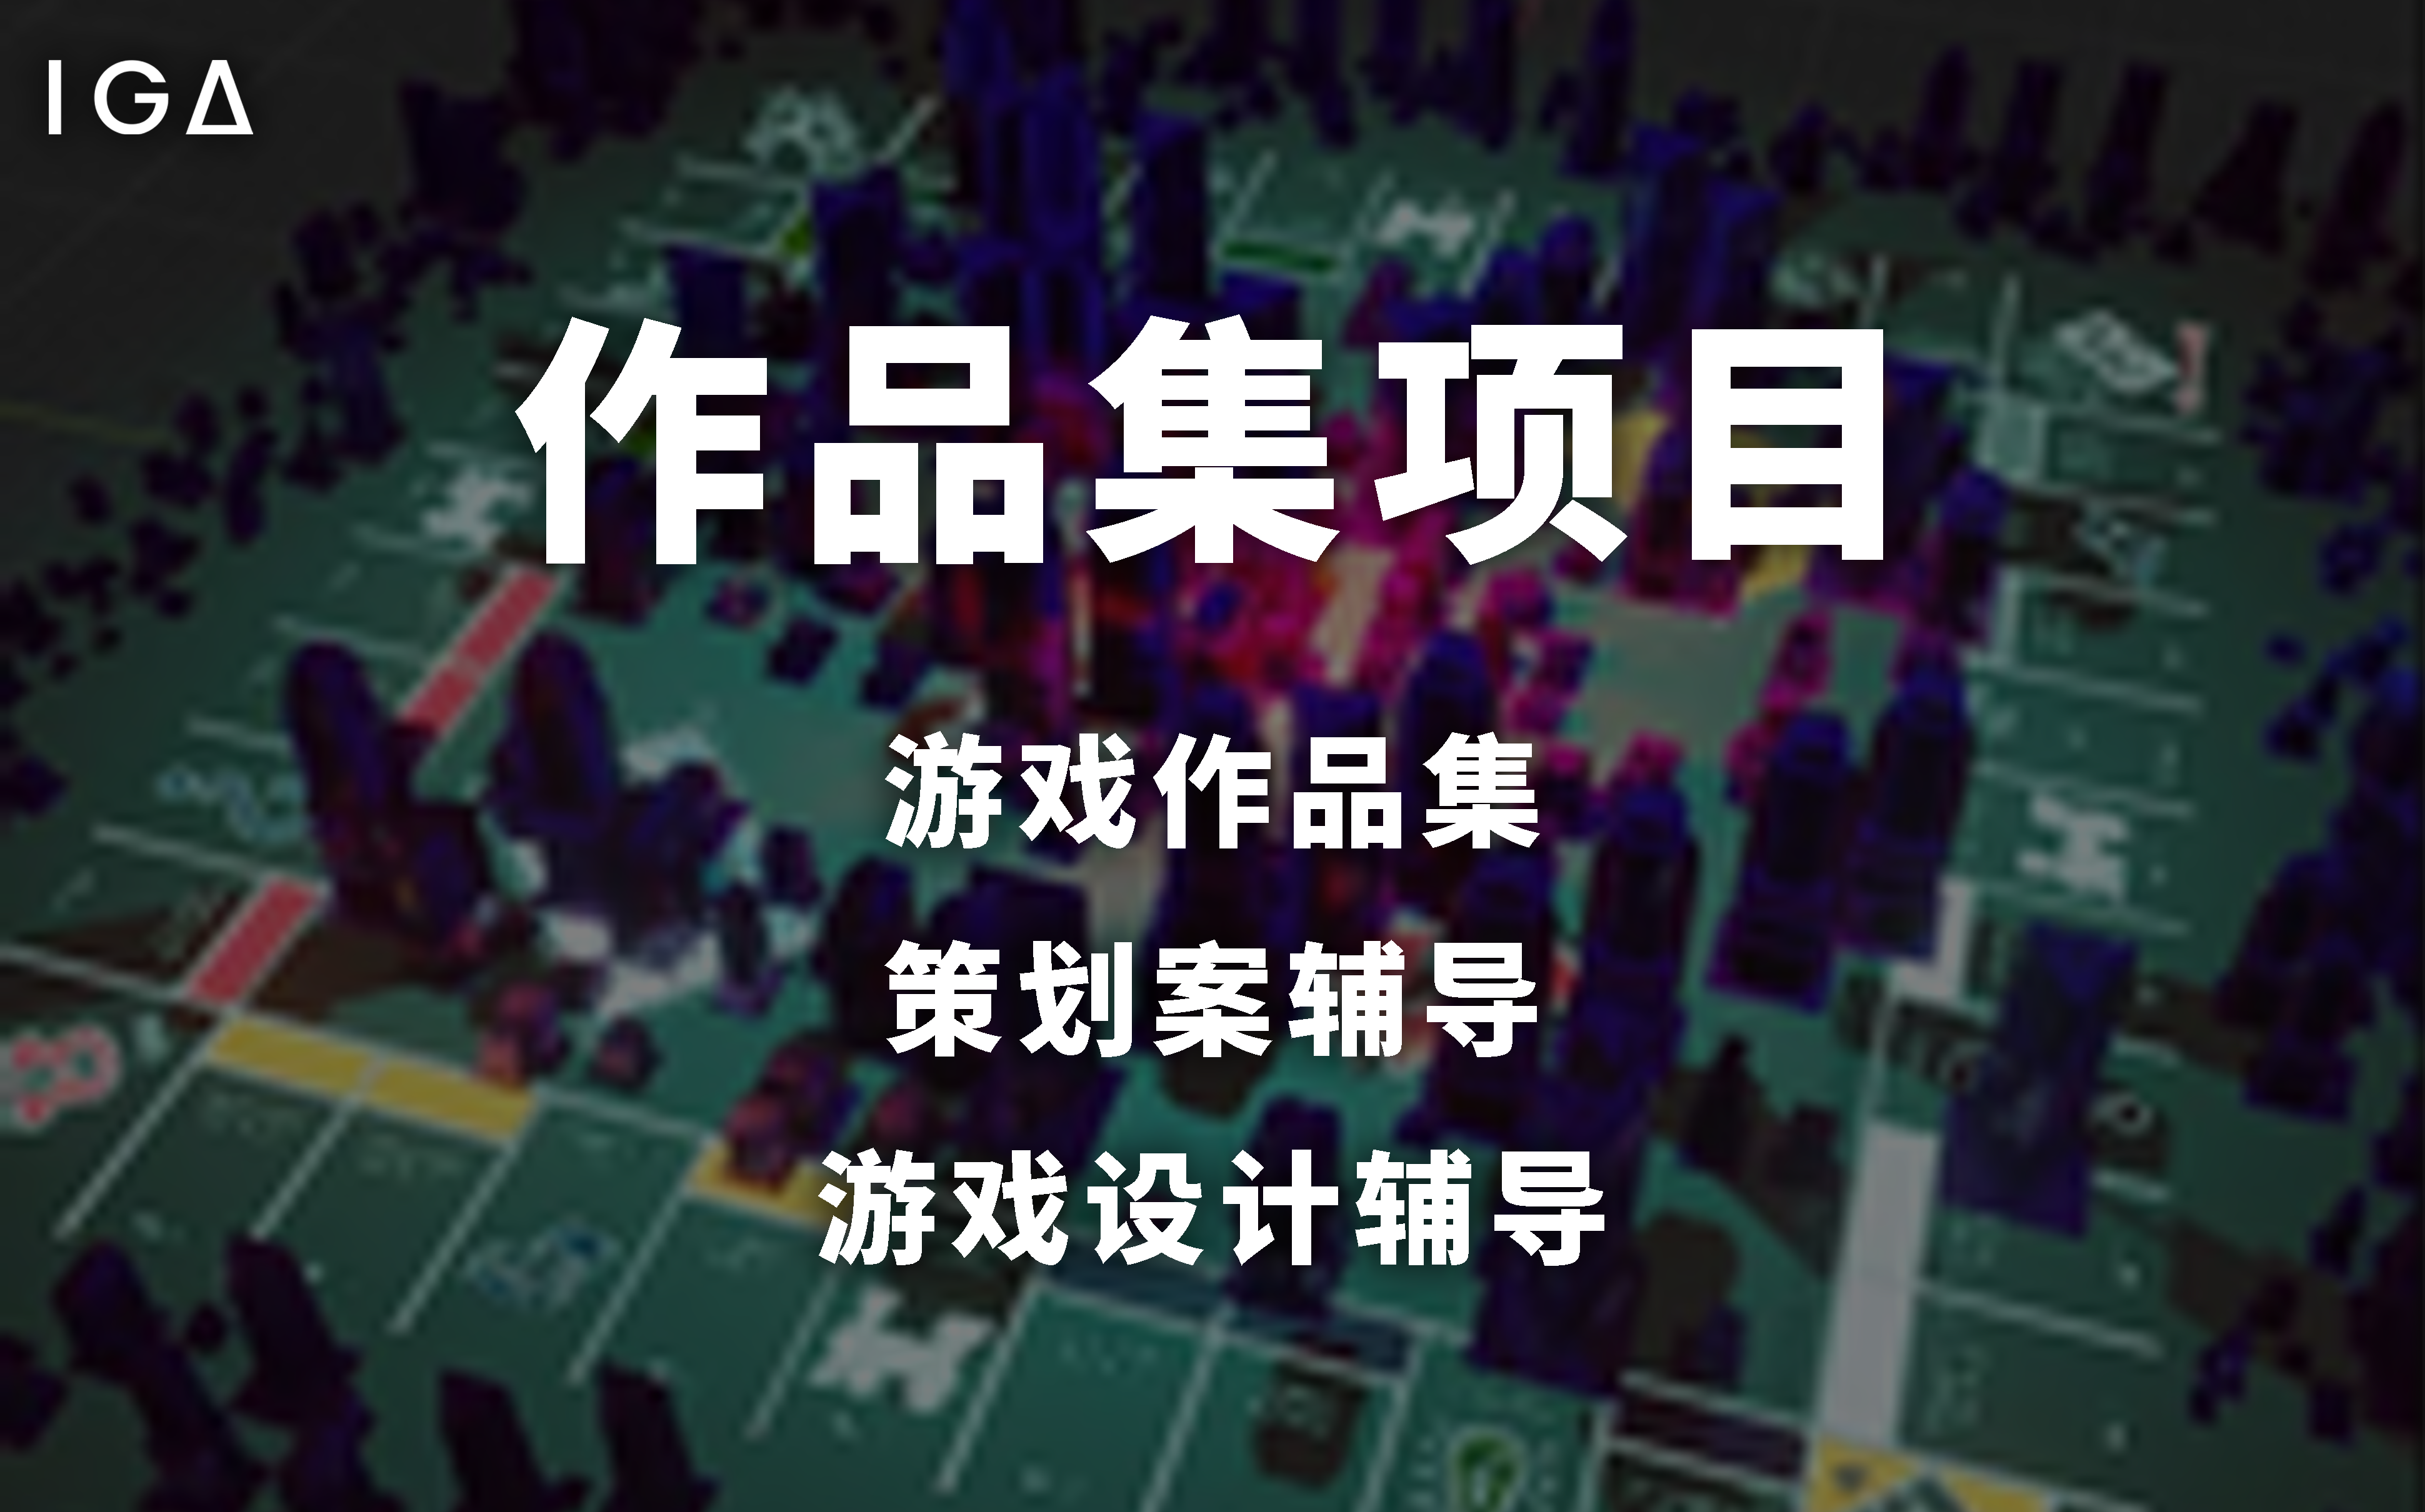 上海IGA传火游戏设计作品集项目